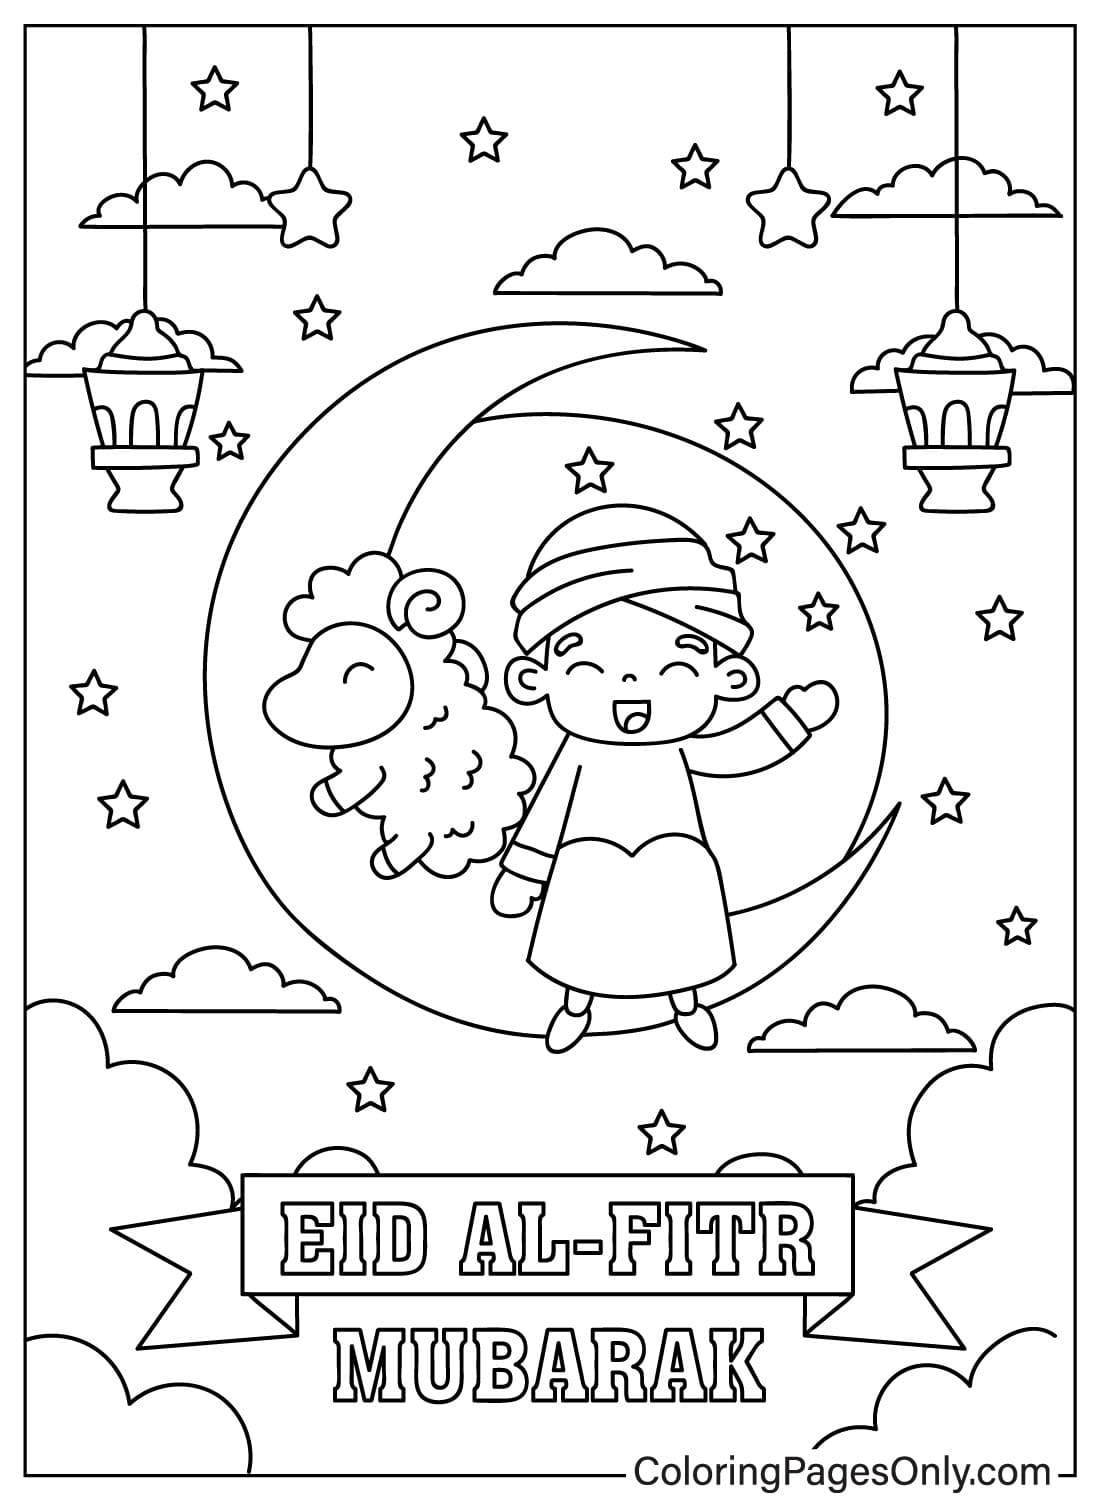 Página para colorear de Eid Al-Fitr JPG de Eid Al-Fitr